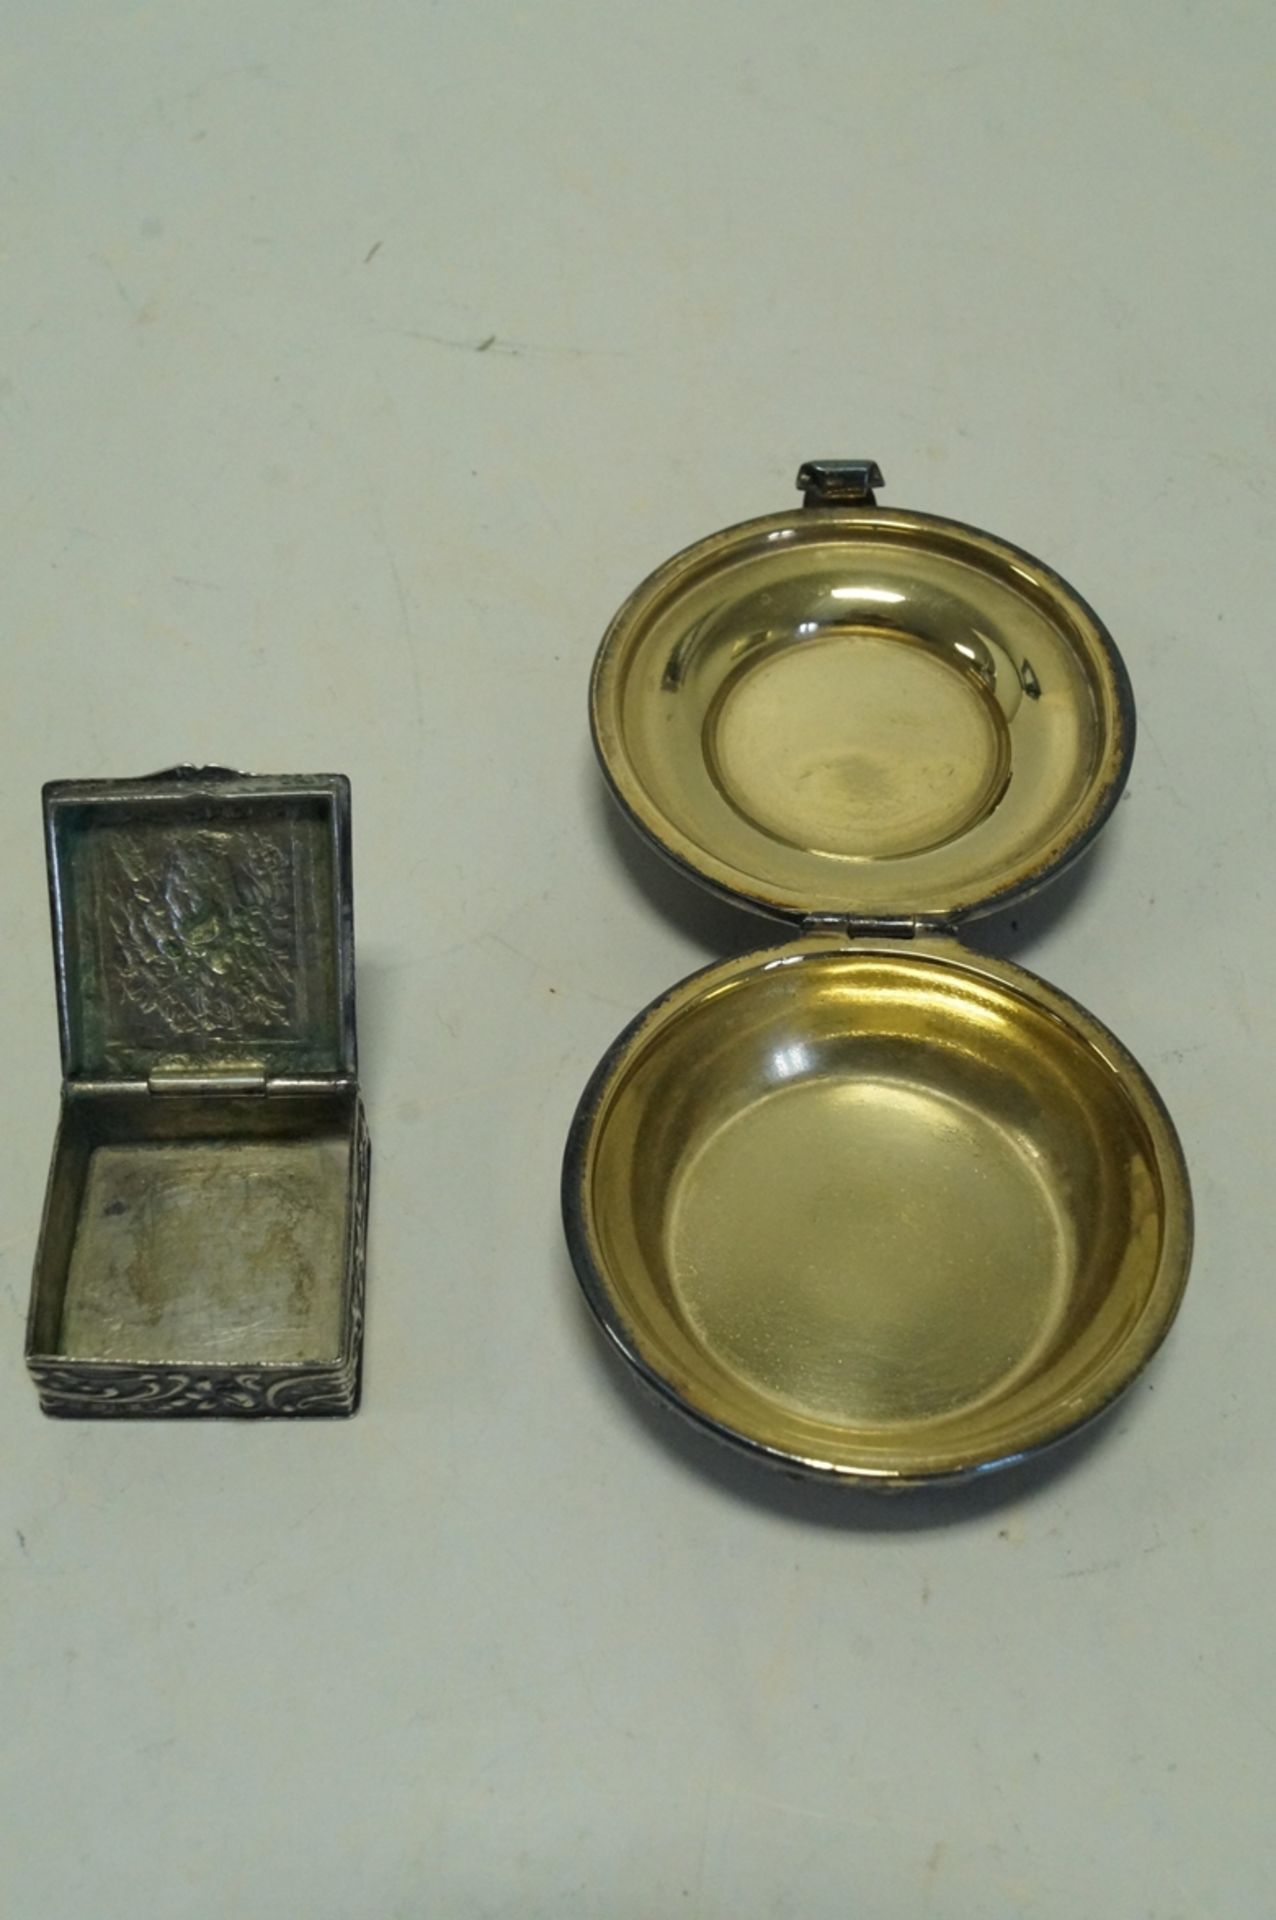 Zwei silberne Pillendöschen mit Klappdeckel; beide nicht gepunzt; silber/versilbert?; Gesamtgewicht - Bild 2 aus 2